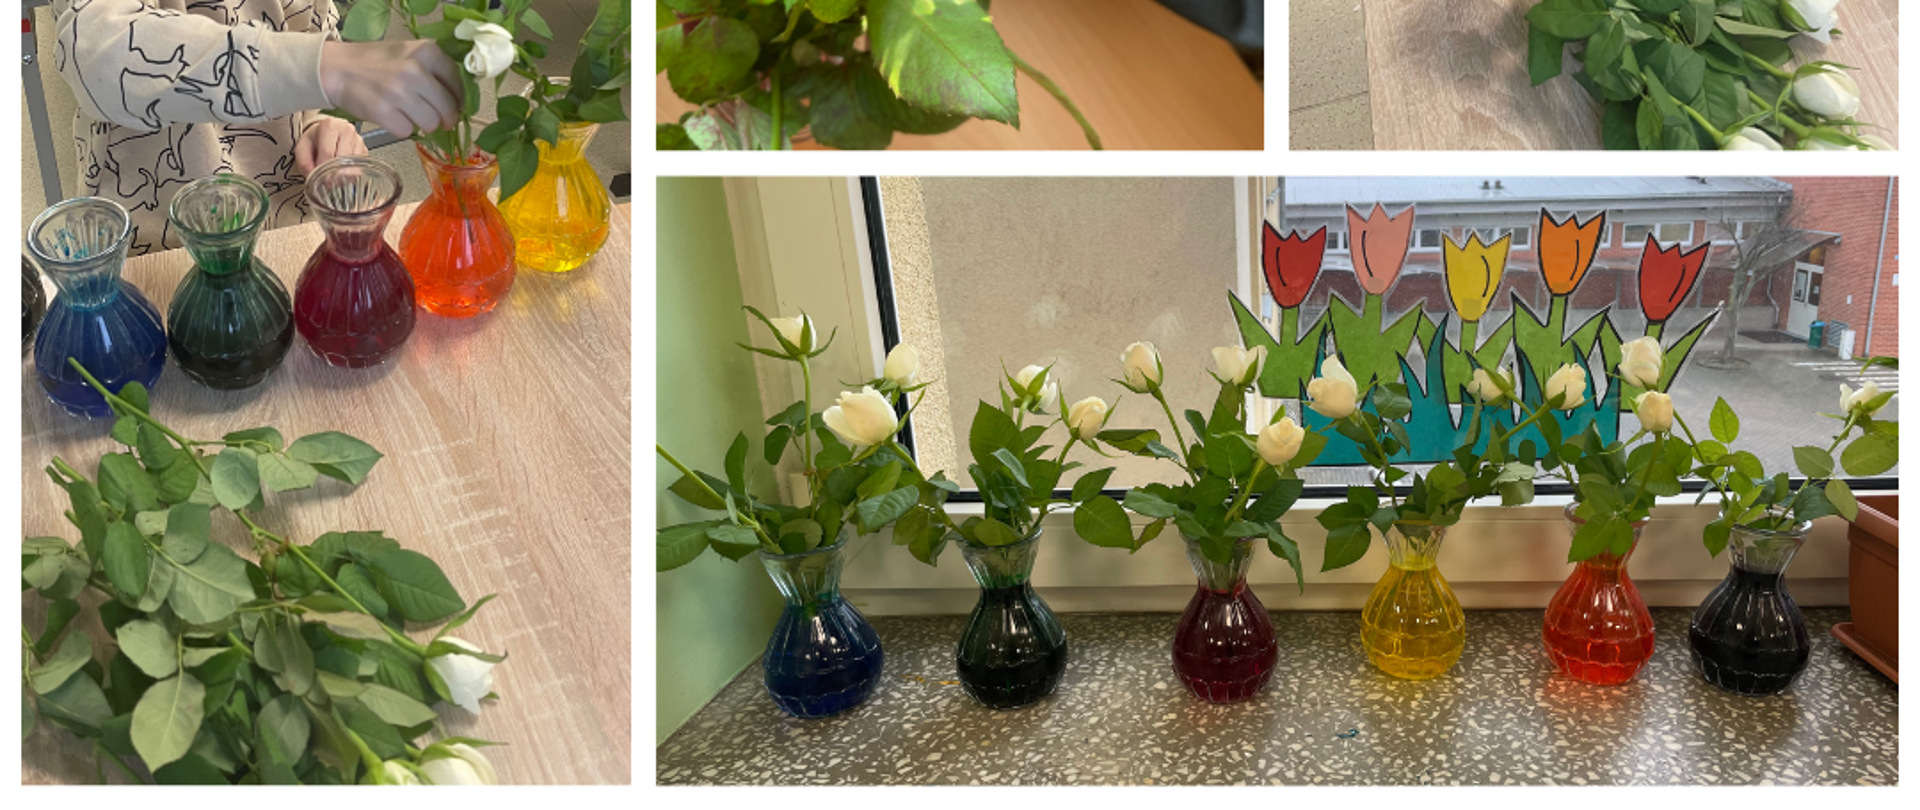 Na górze zdjęcie róż w wazonach z kolorową wodą, za nimi widać twarze dzieci. Poniżej zdjęcia dzieci wkładających białe róże do wazonów z kolorową wodą. Na dole białe róże w wazonach z kolorową wodą. 